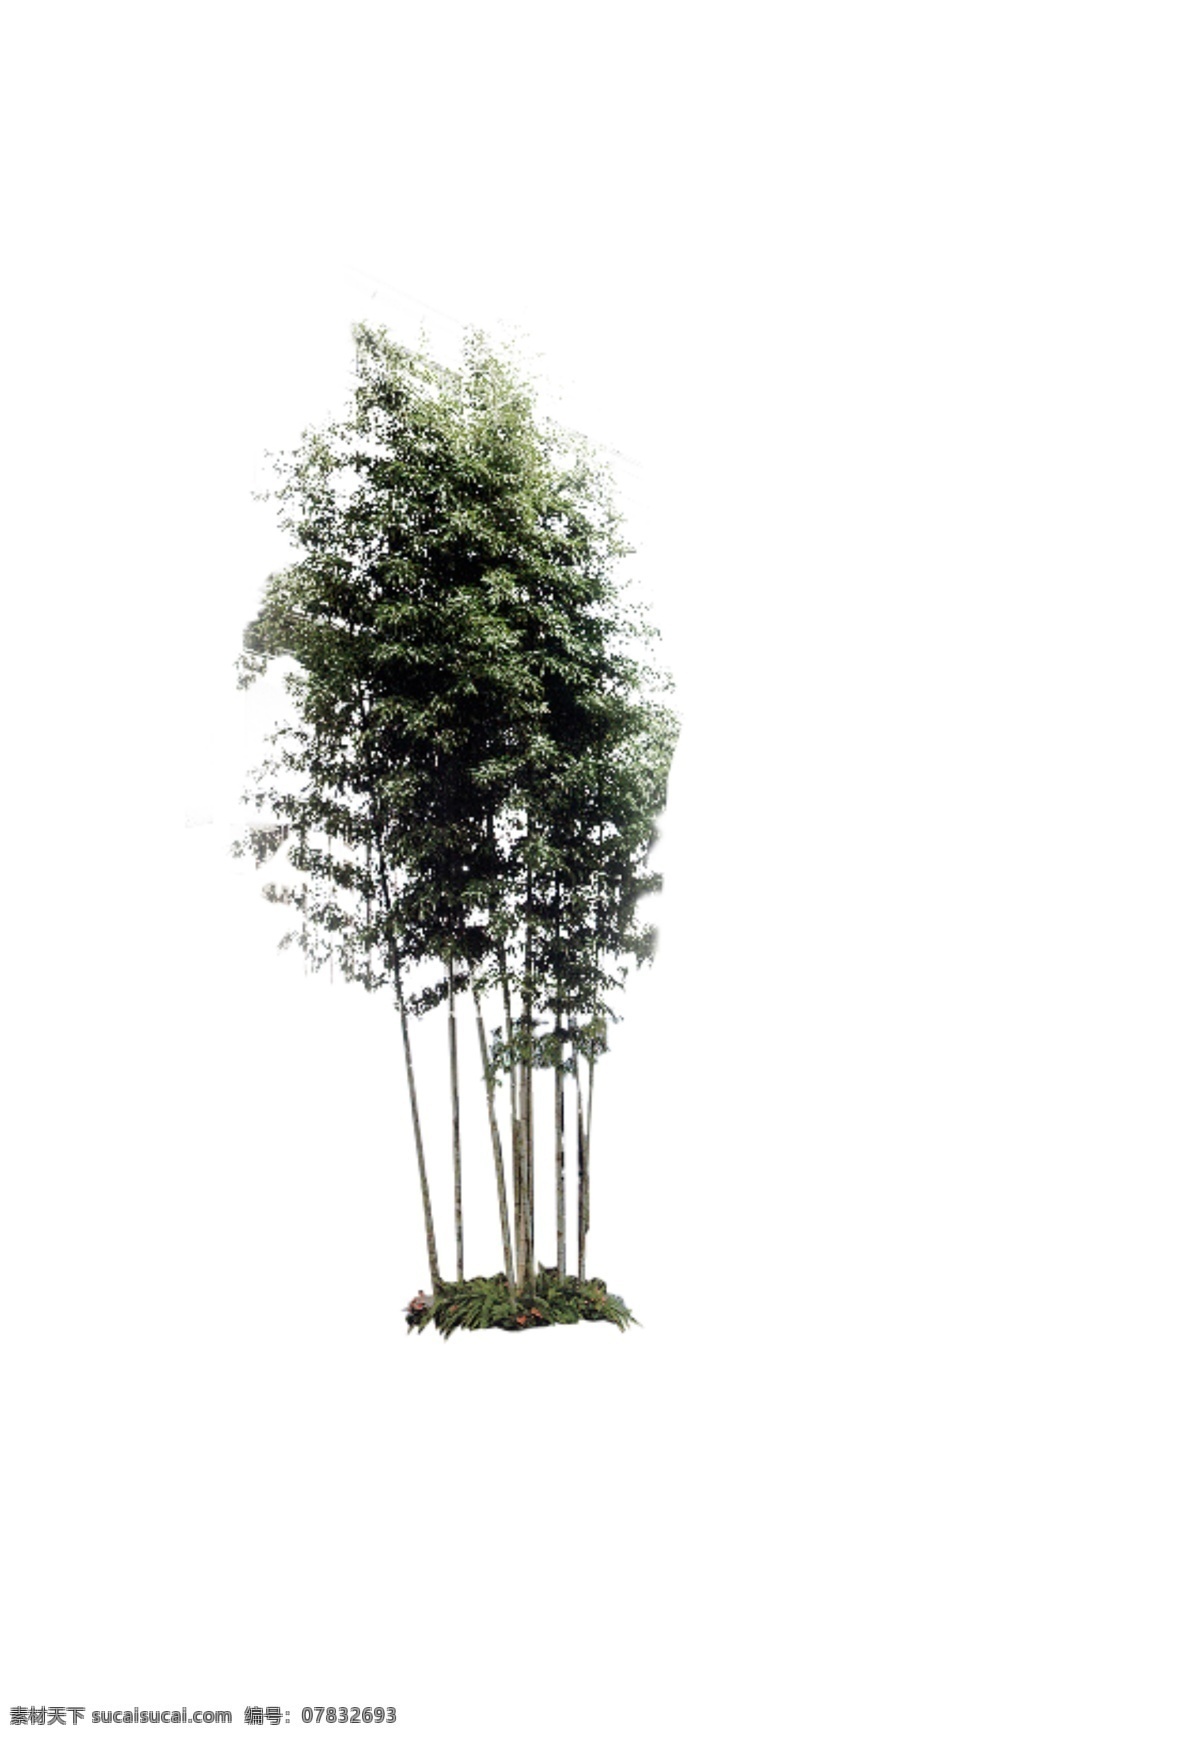 竹 系列 之一 分层 风景 环境 绿色 源文件 植物 竹系列之一 矢量图 日常生活